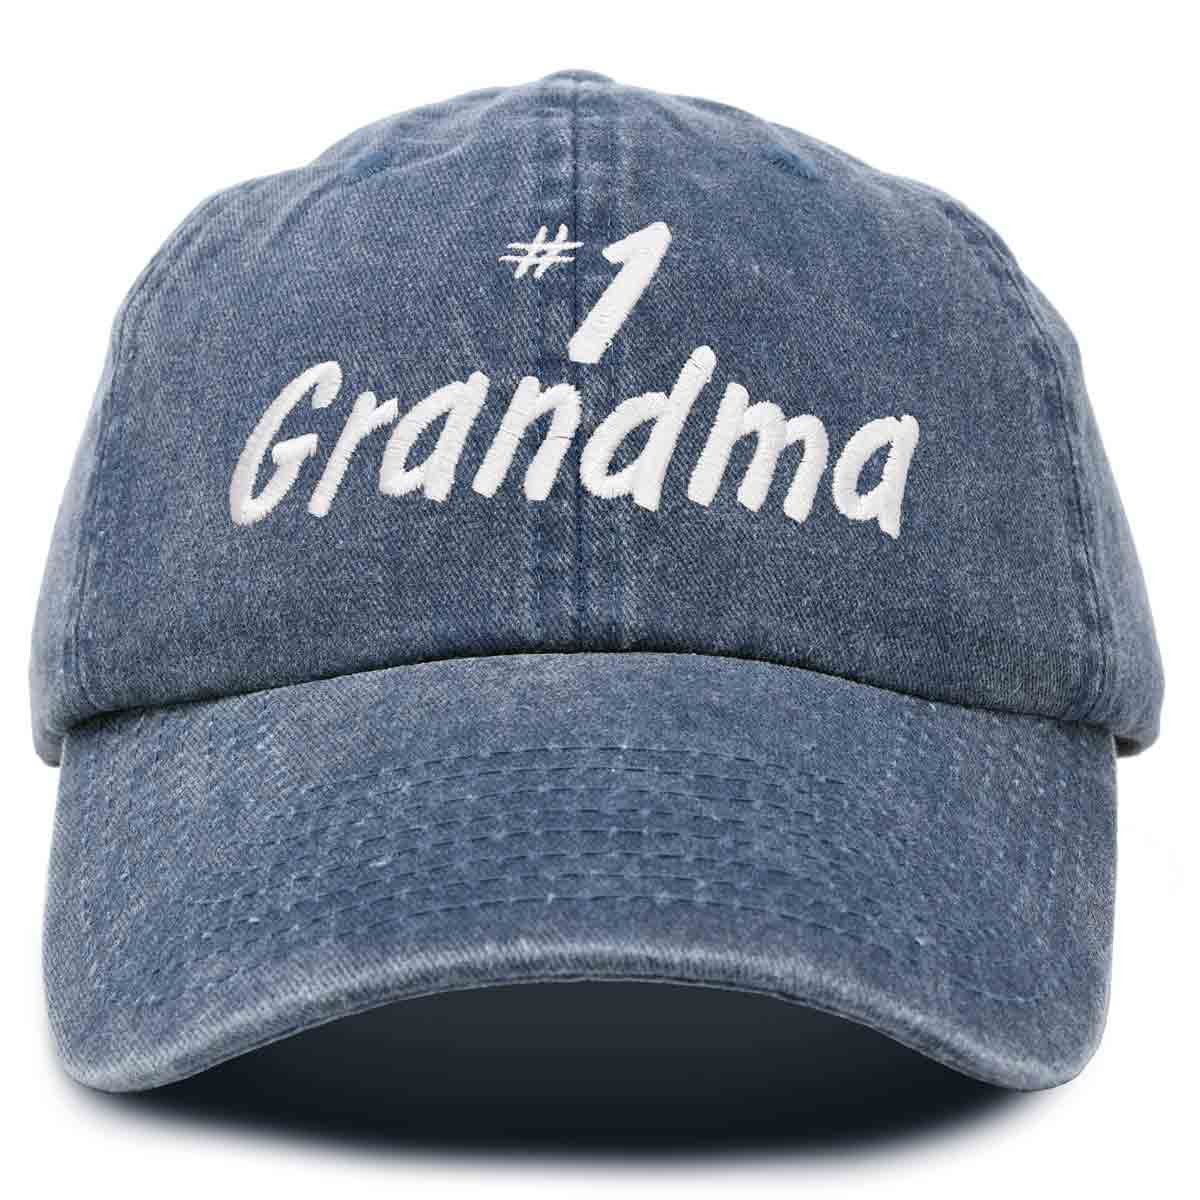 Dalix Number 1 Grandma Hat